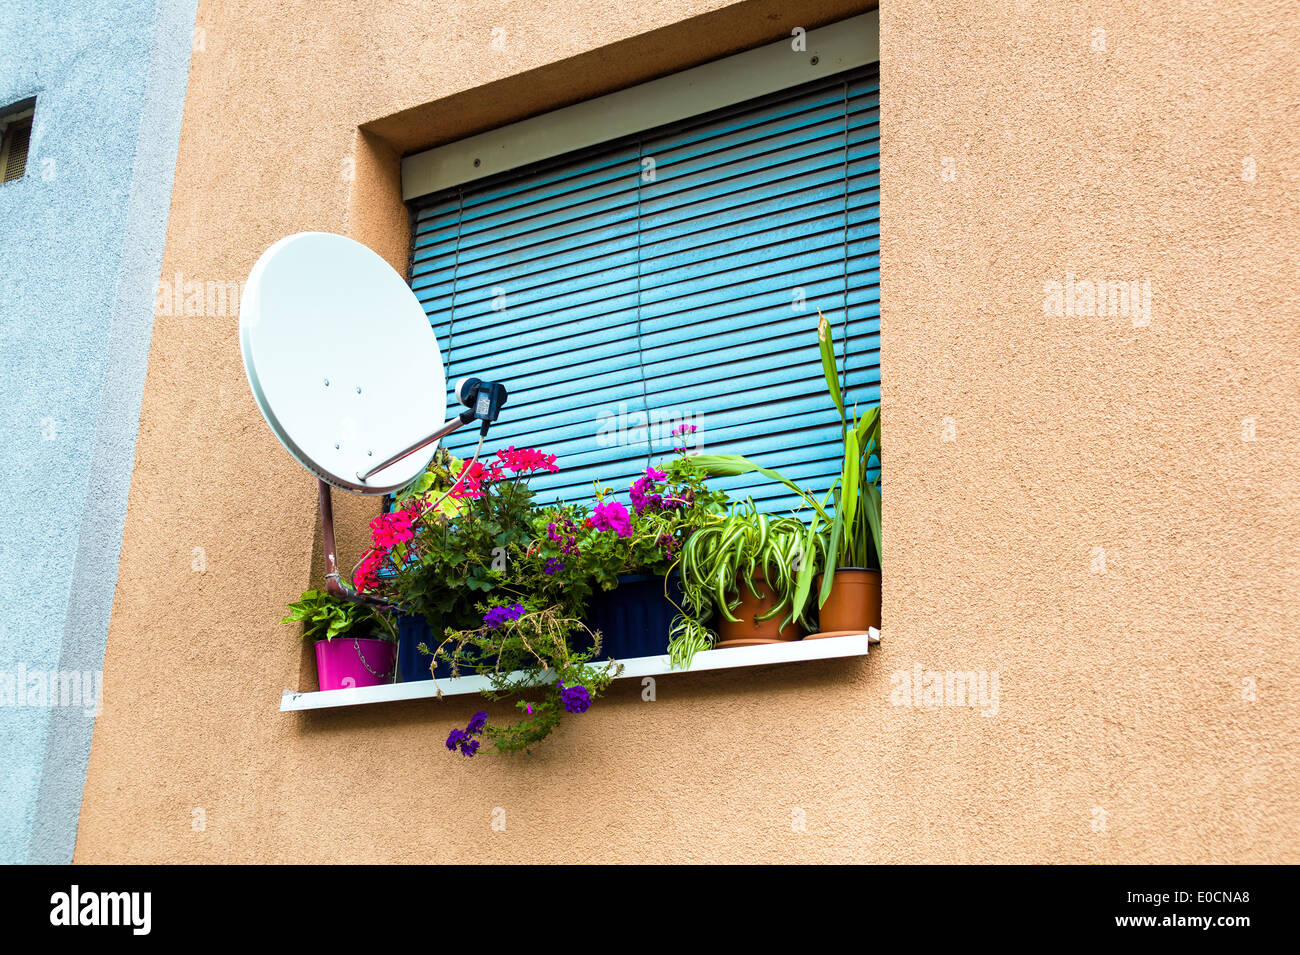 Sat-Arrangement für ein TV-Gerät und Blumen auf dem Fenster einer Wohnung in der Stadt, Satellitenanlage Faeuer Ein Fe Stockfoto